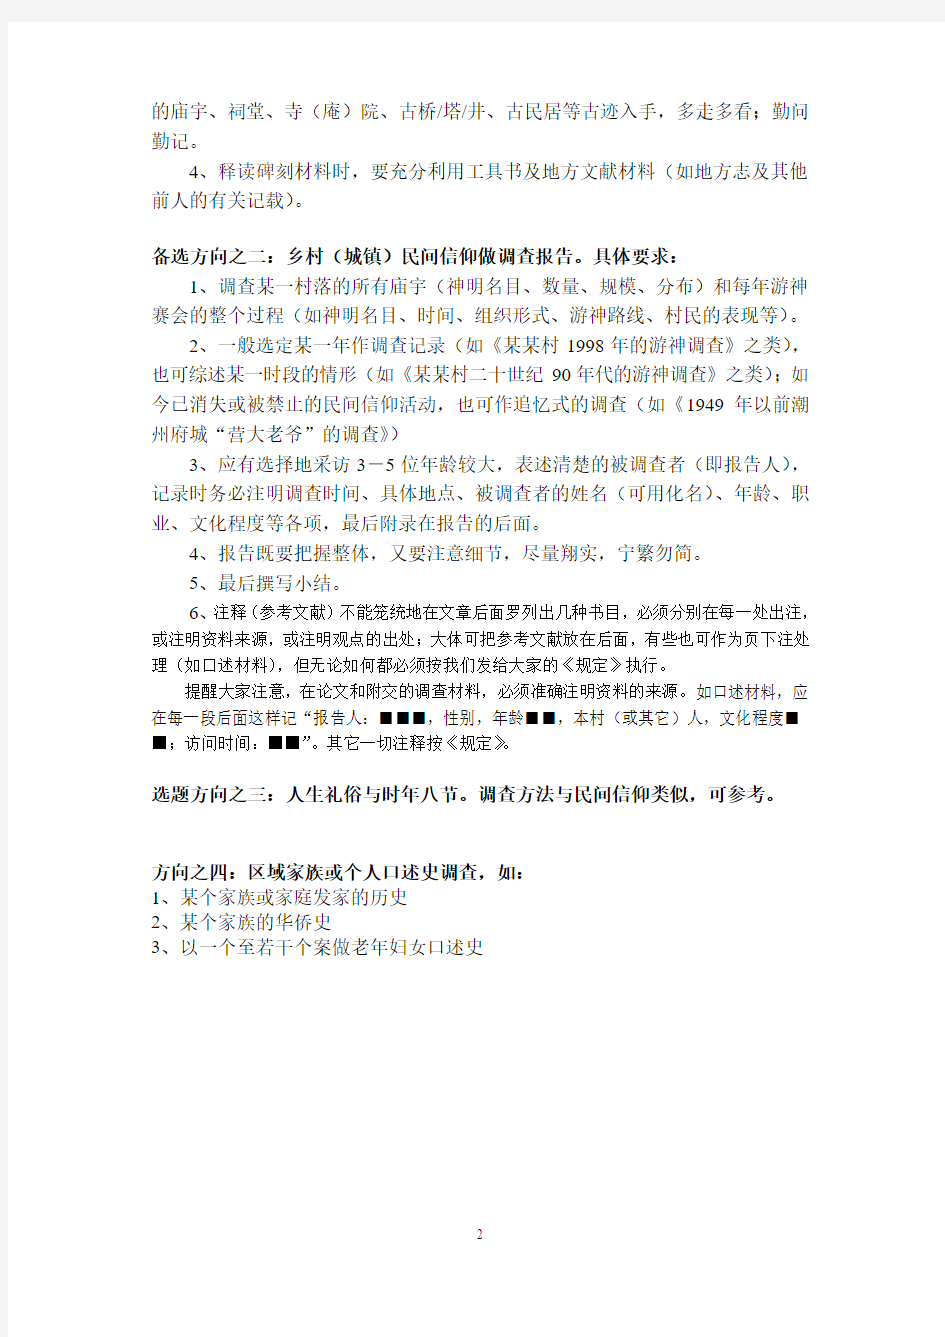 潮汕历史文化课期末作业详明要求(2012年4月18日修改)